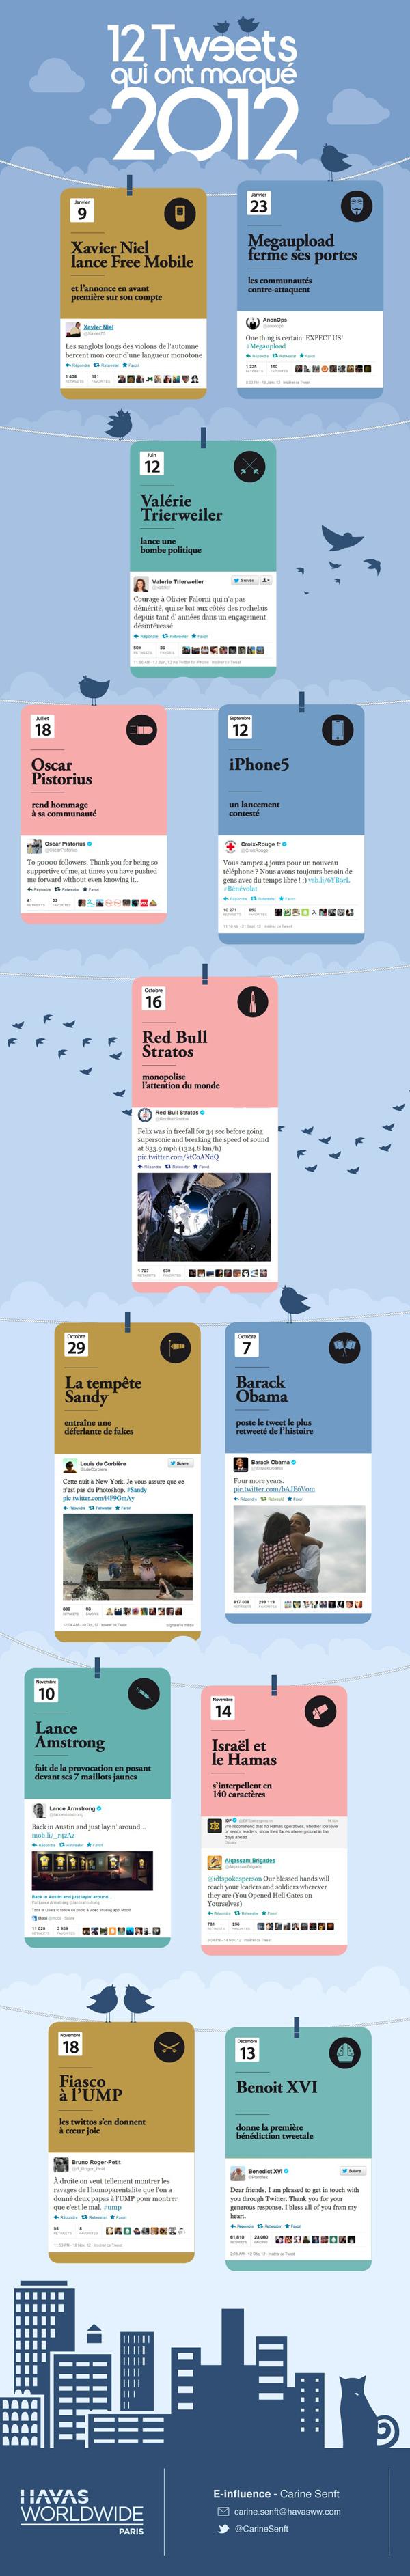 Les 12 Tweets qui ont marqué 2012